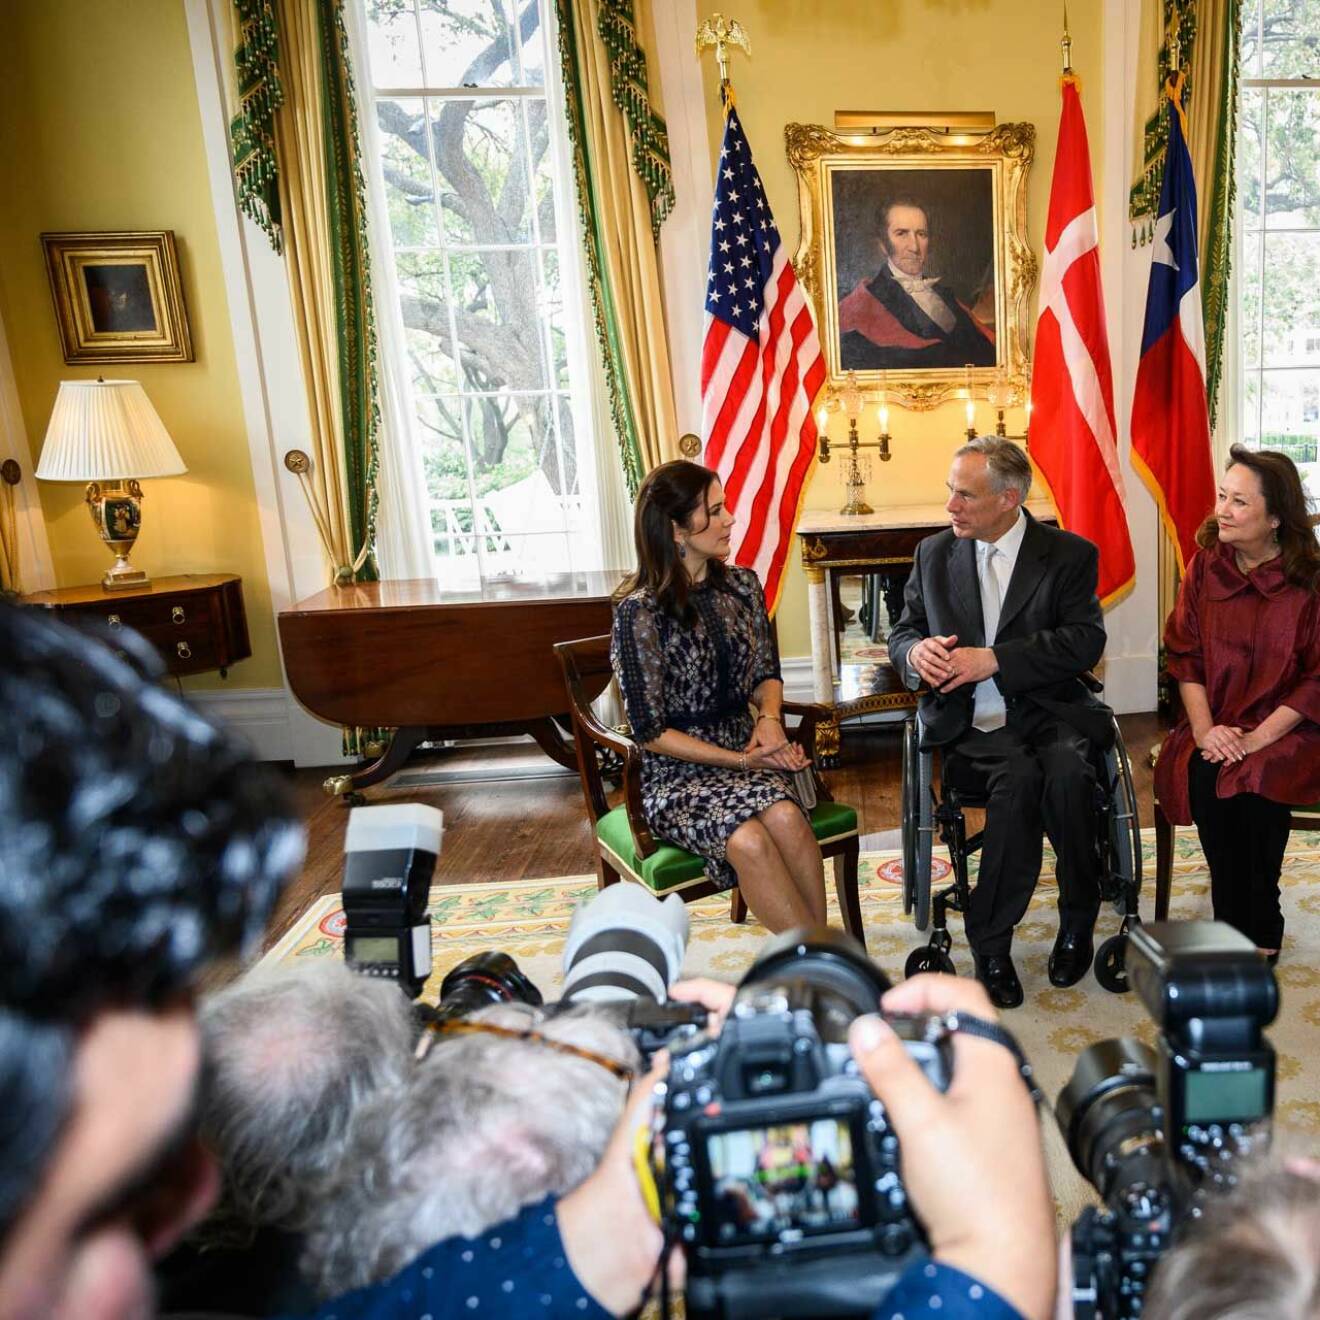  Kronprinsessan Mary på officiell visit hemma hos officiell artighetsvisit hemma hos Texas guvernör Greg Abbot och hans hustru Cecilia